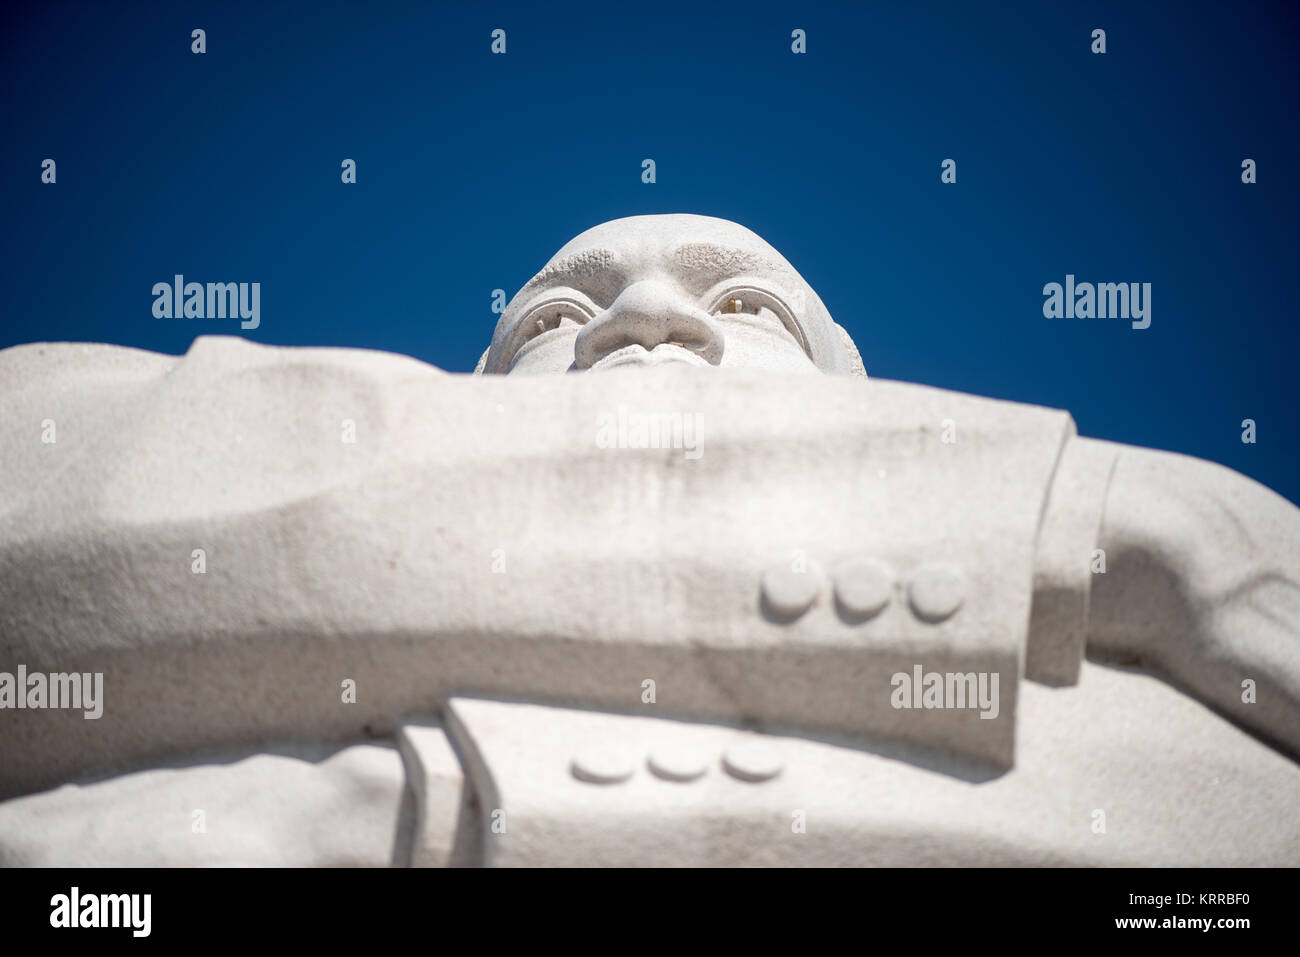 WASHINGTON, DC - guardando verso l'alto da sotto la statua di Martin Luther King Jr che è parte della pietra di speranza nel cuore del MLK Memorial a Washington DC. La statua fu scolpita da scultore cinese Lei Yixin. Foto Stock